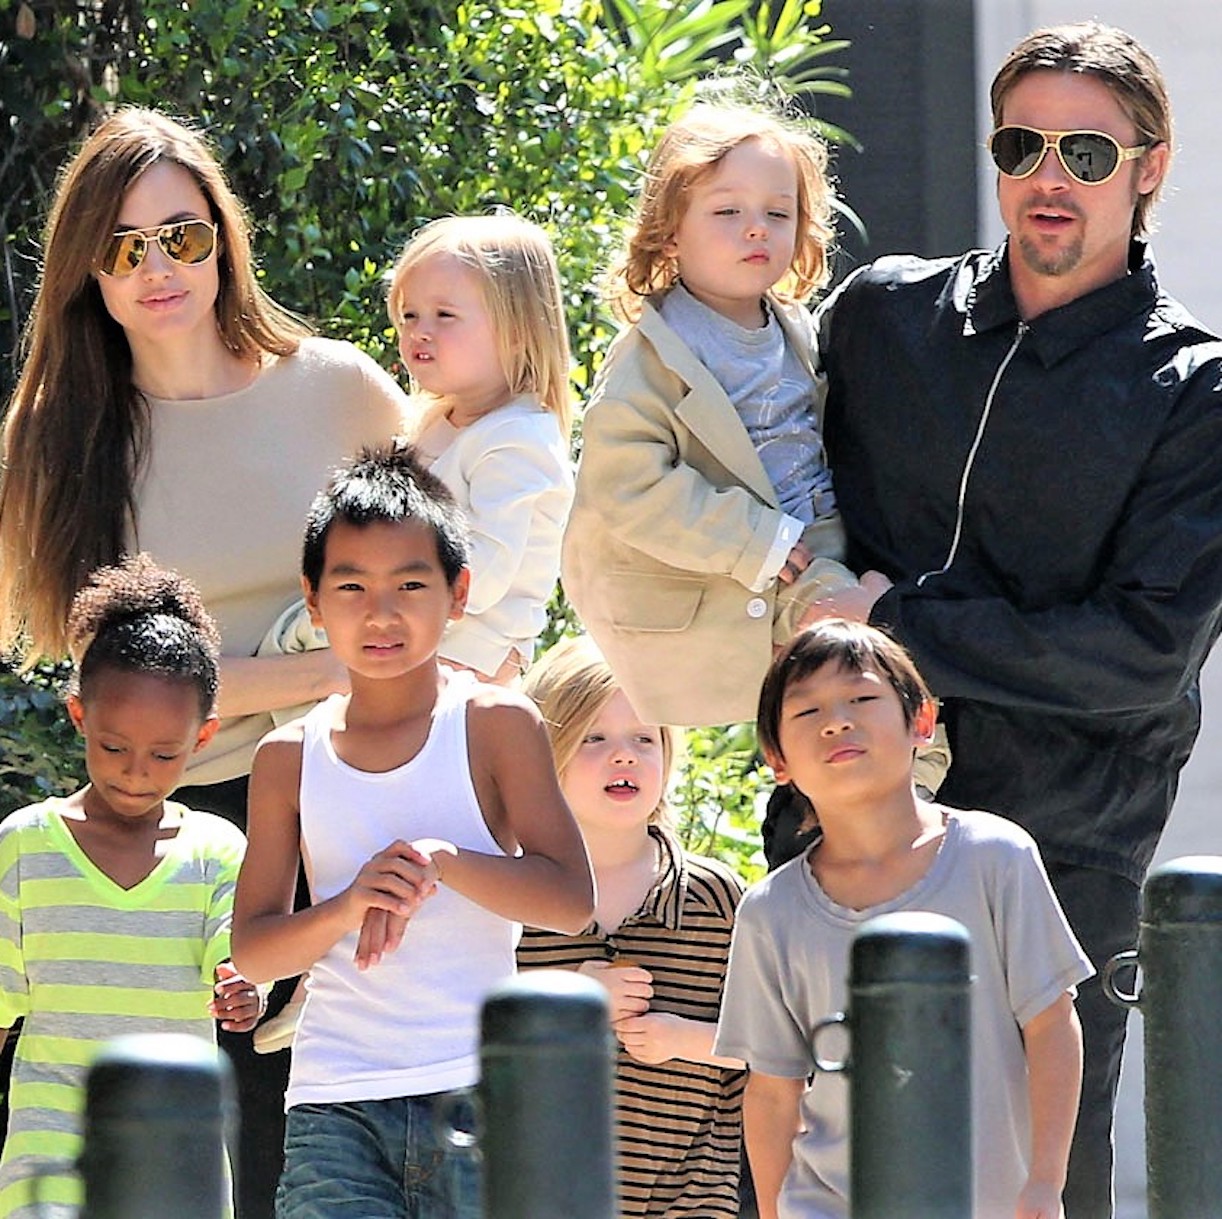 “Ecco cosa ha fatto ai nostri figli”. Angelina Jolie contro Brad Pitt, l’accusa è pesantissima